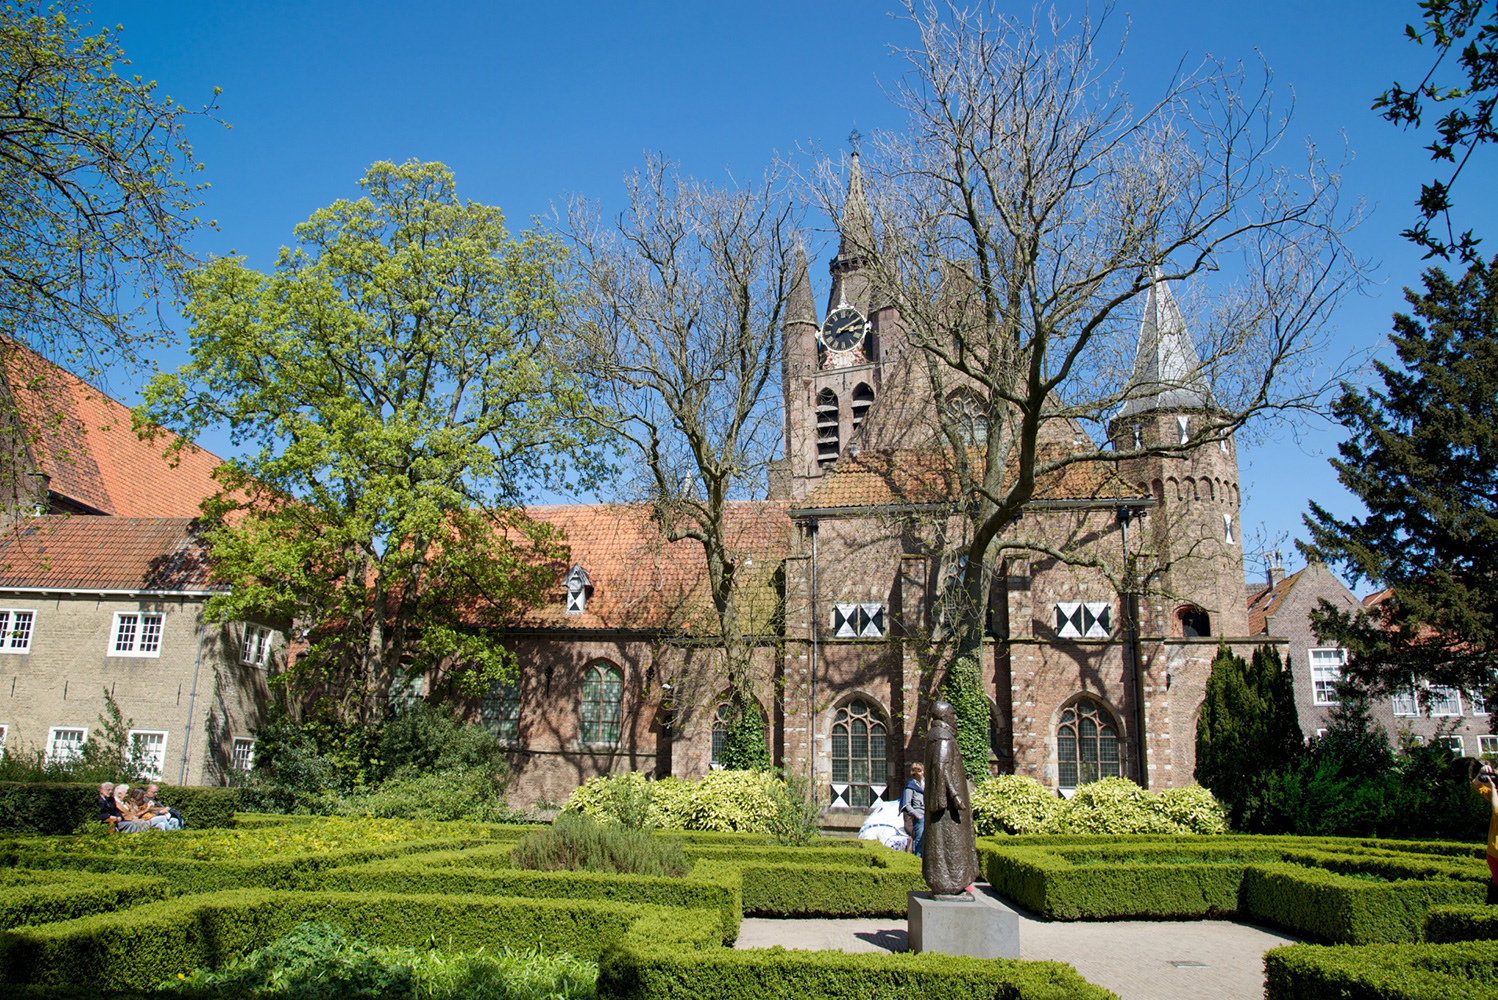 Prinsenhof Garden Delft